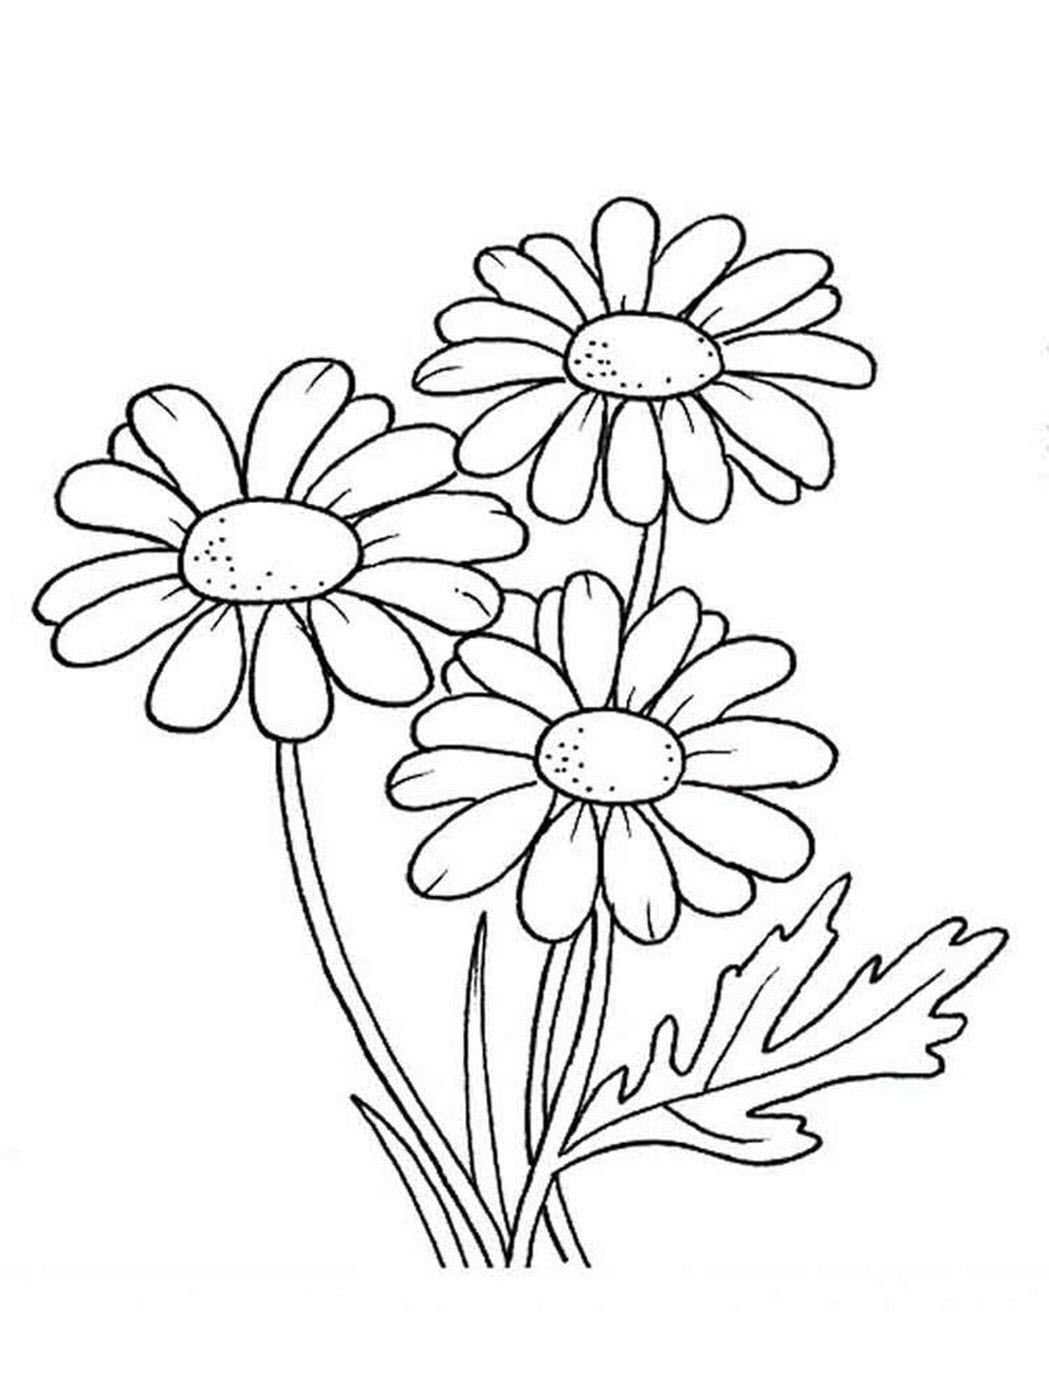 99 Cách Vẽ Bông Hoa Hình Vẽ Bông Hoa Đẹp Quá Đơn Giản